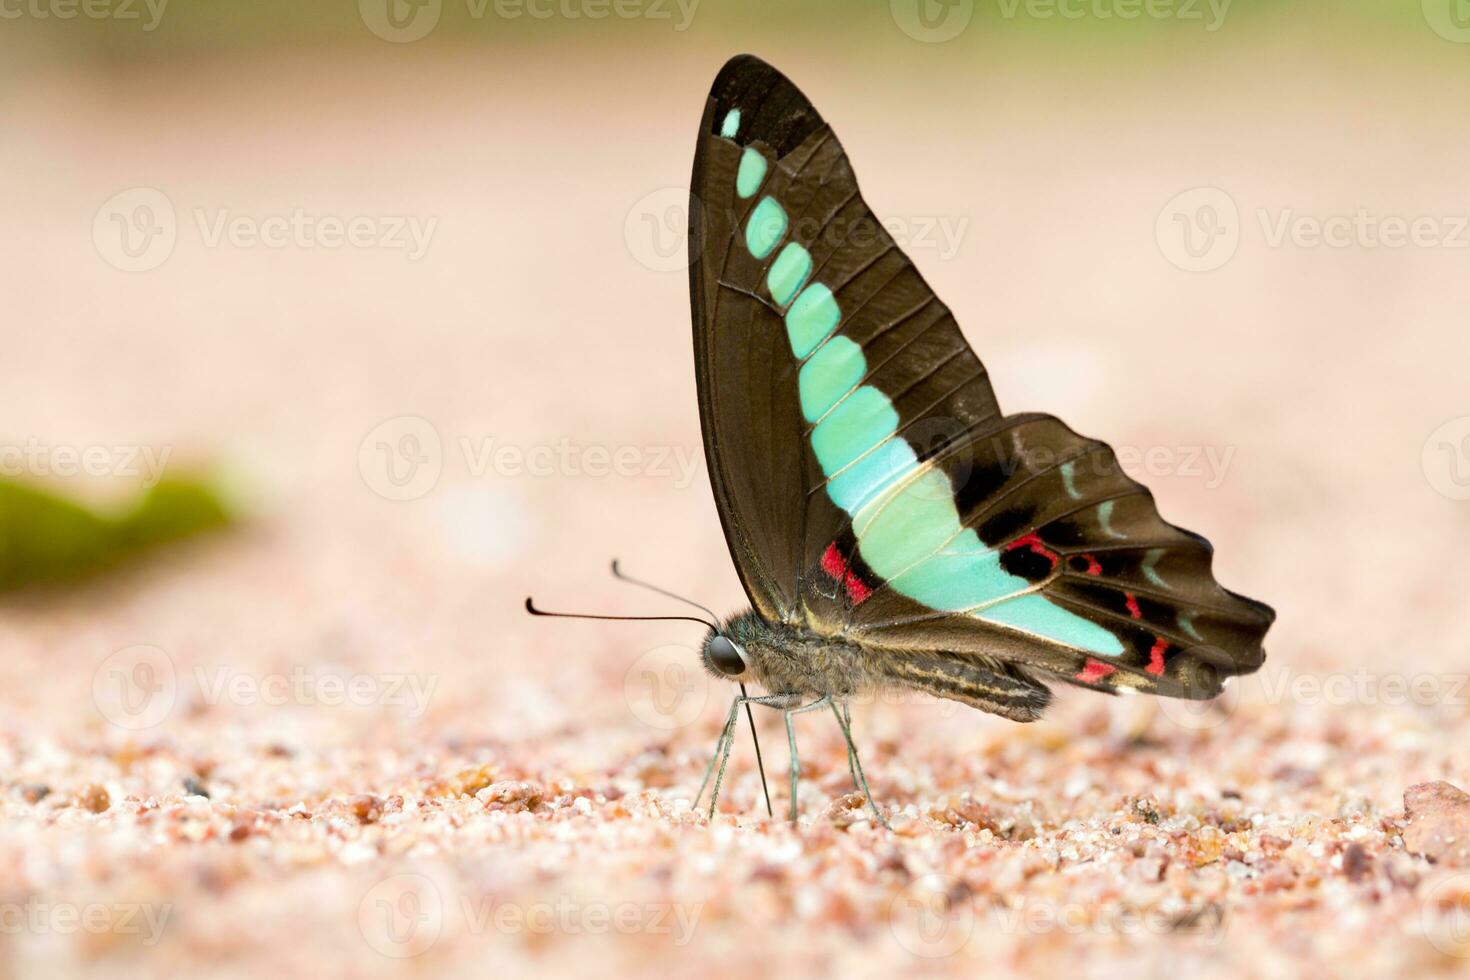 farfalla jay comune mangiato minerale sulla sabbia. foto